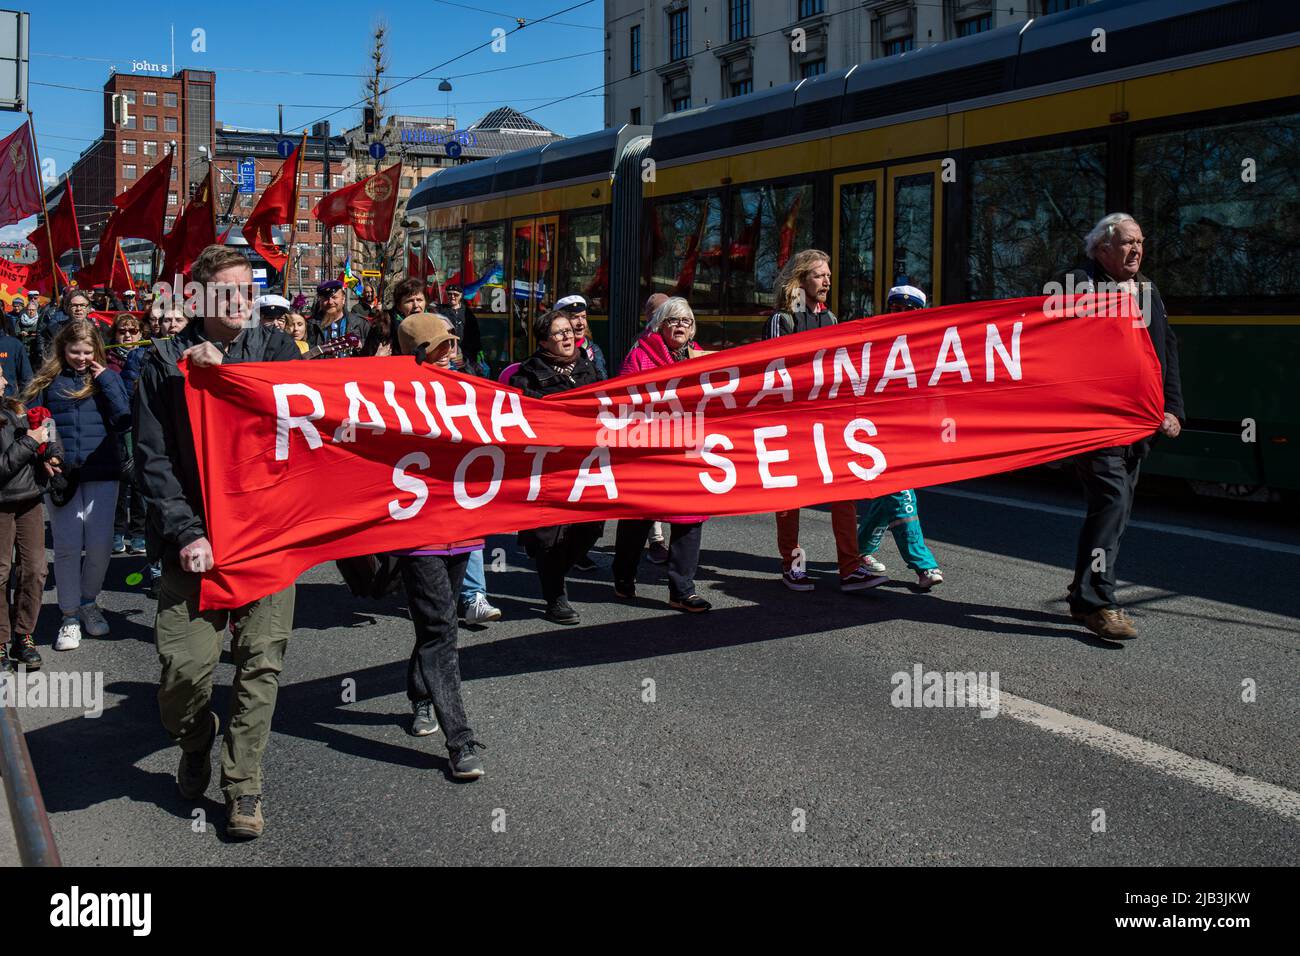 Rauha Ukrainaan. SOTA seis. Menschen marschieren und halten ein rotes Banner bei der sozialistischen Parade zum 1. Mai am Internationalen Arbeitertag in Helsinki, Finnland. Stockfoto